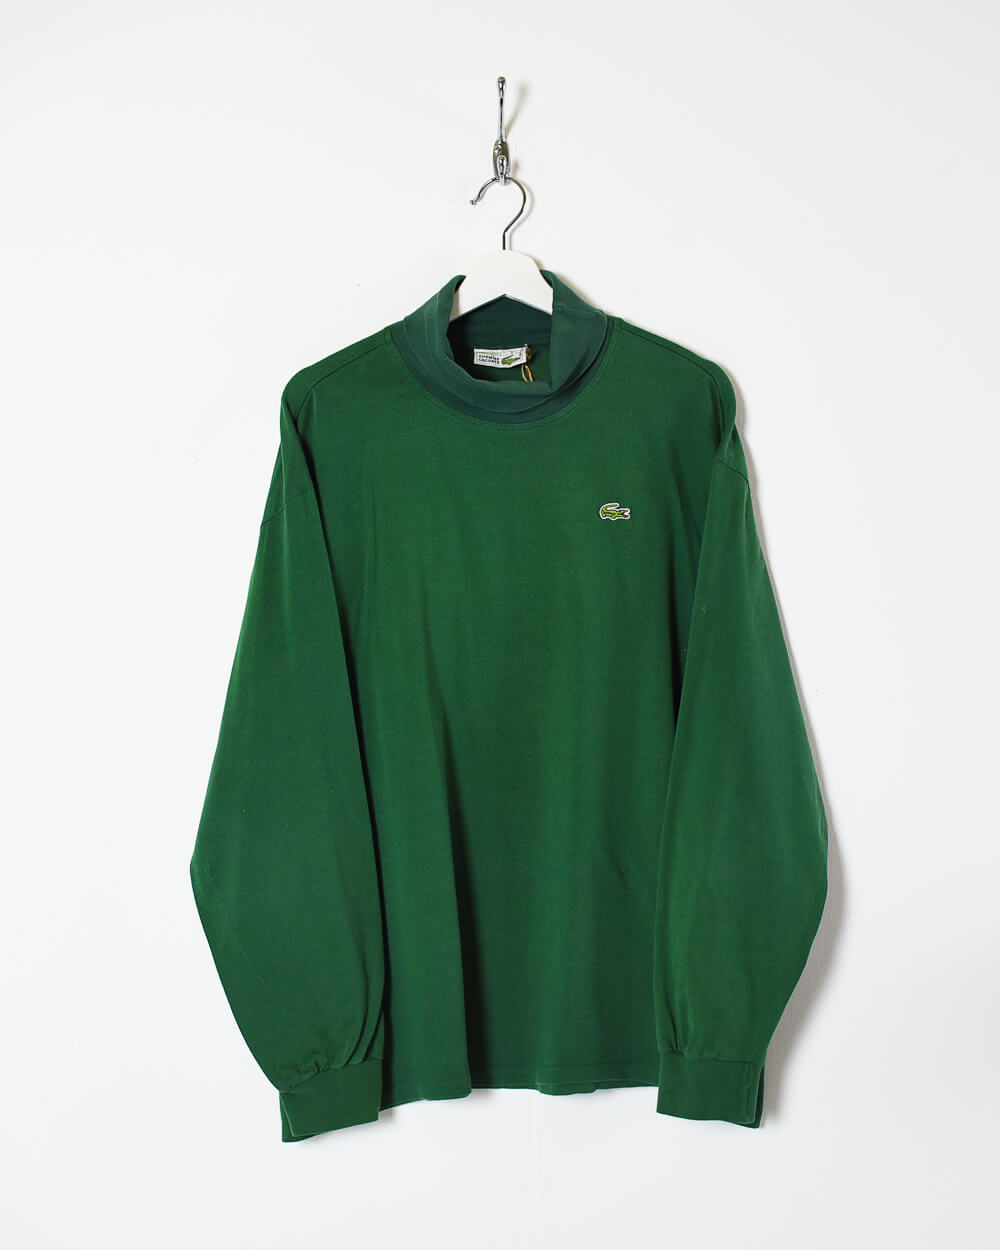 Vintage 90s Cotton Plain Green Chemise Lacoste Turtle Neck Sweatshirt -  X-Large